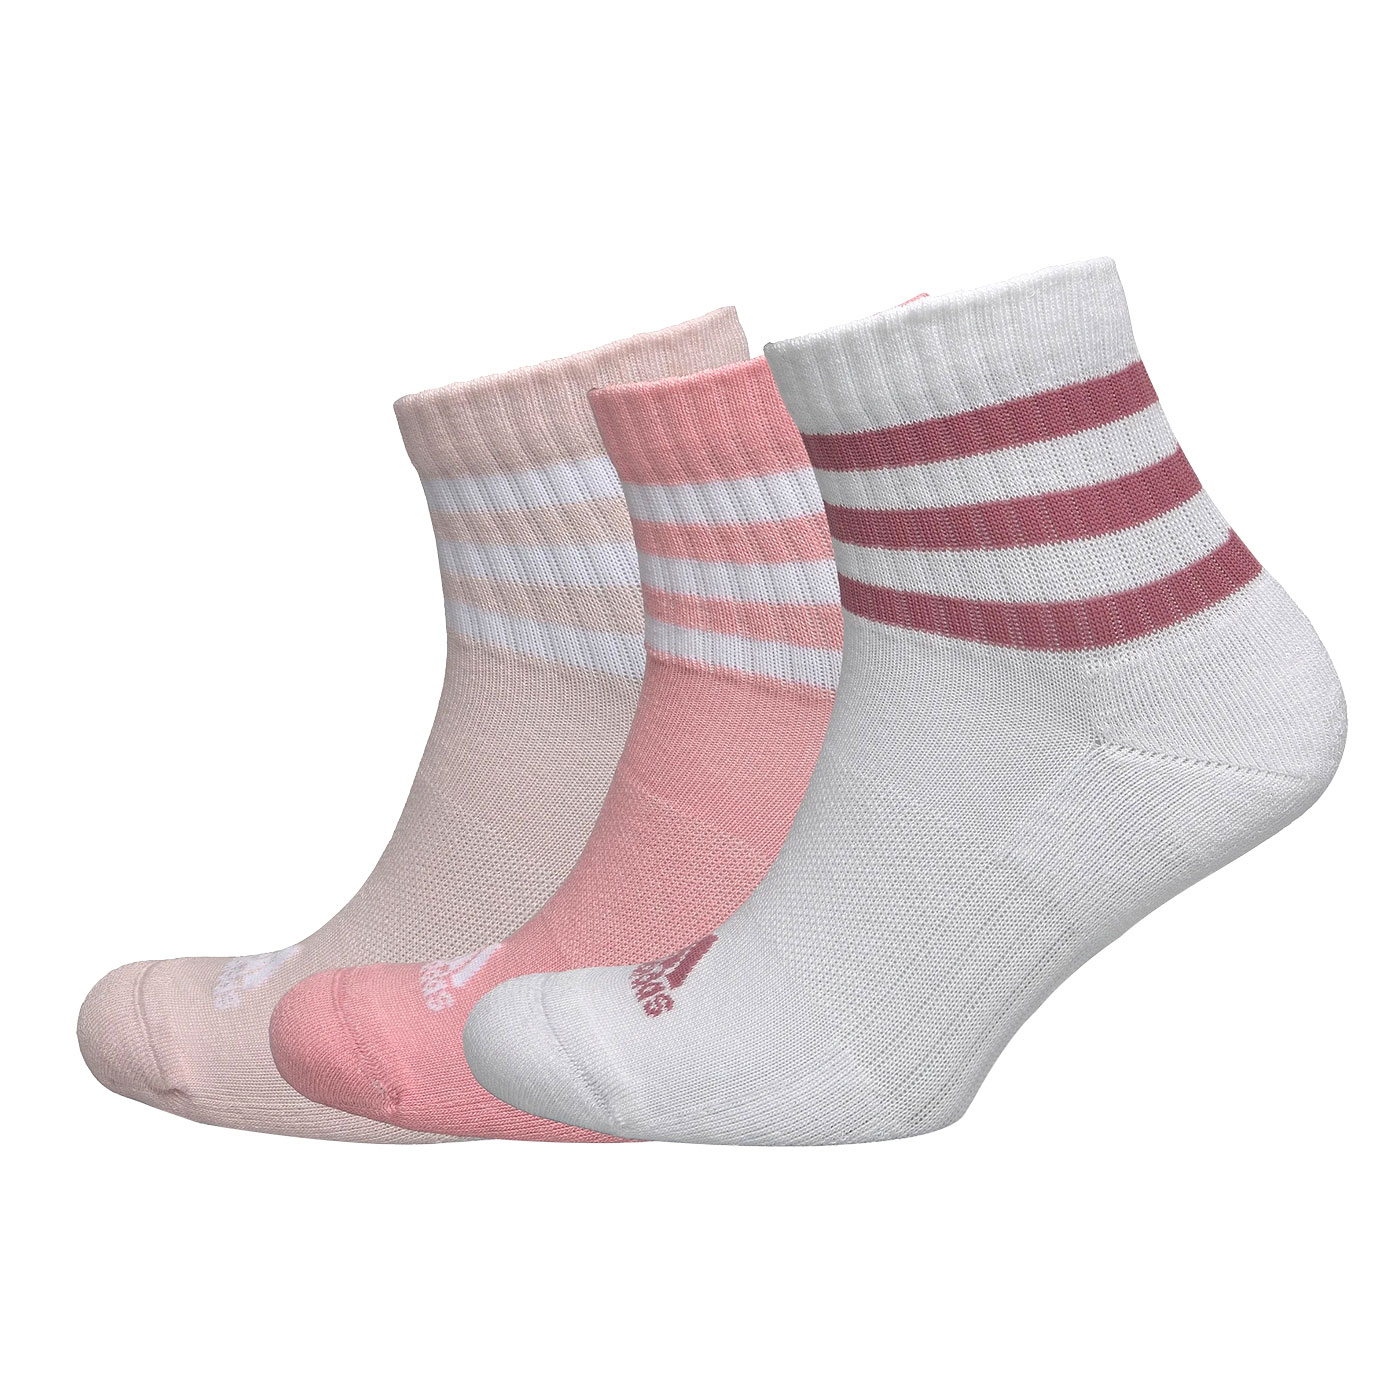 ADIDAS 運動中筒襪(三雙入)  IZ0126 - 白粉紅